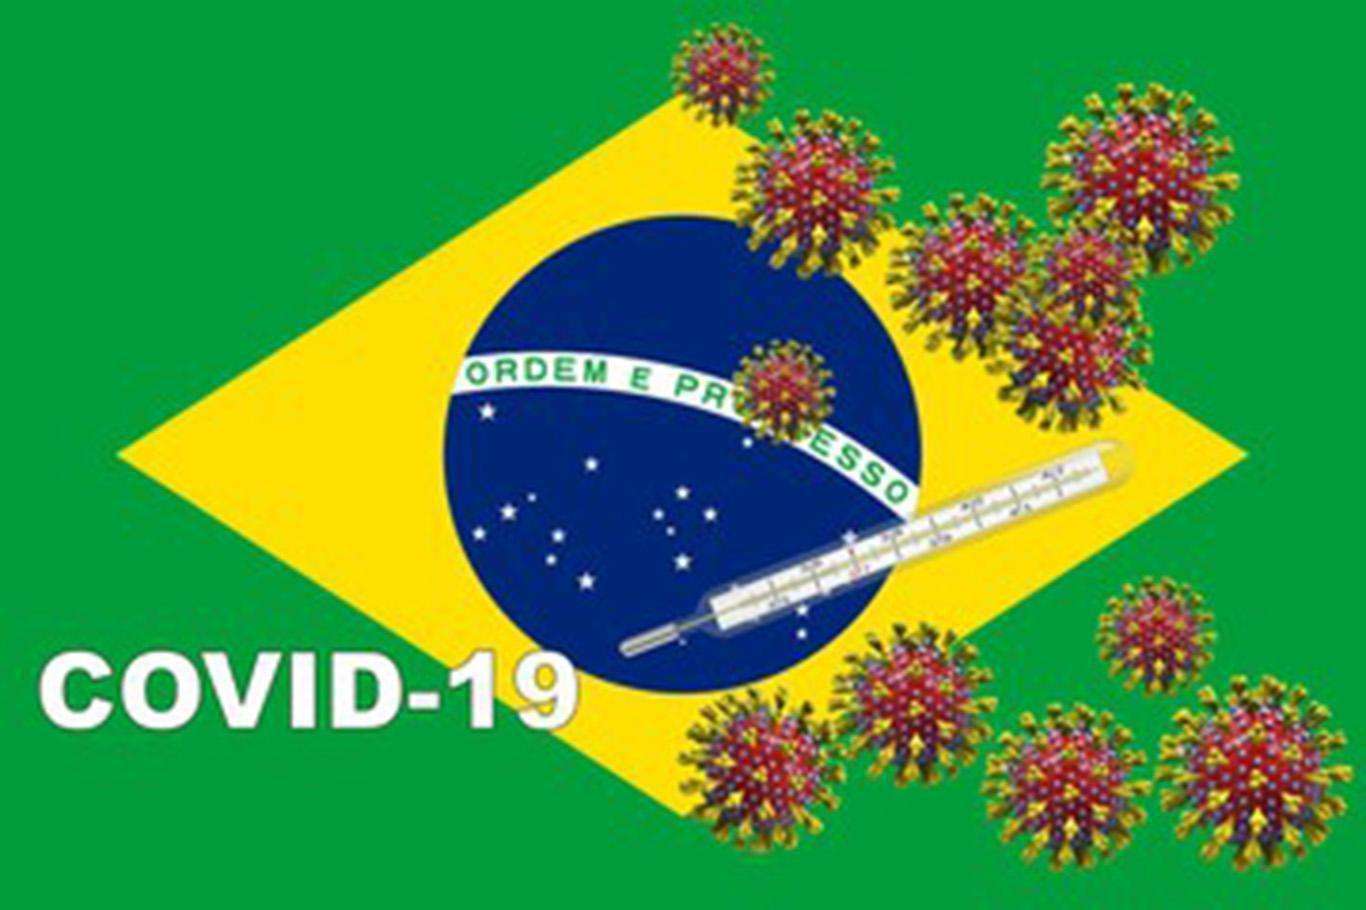 Brazil’s coronavirus death toll surpasses 143,000